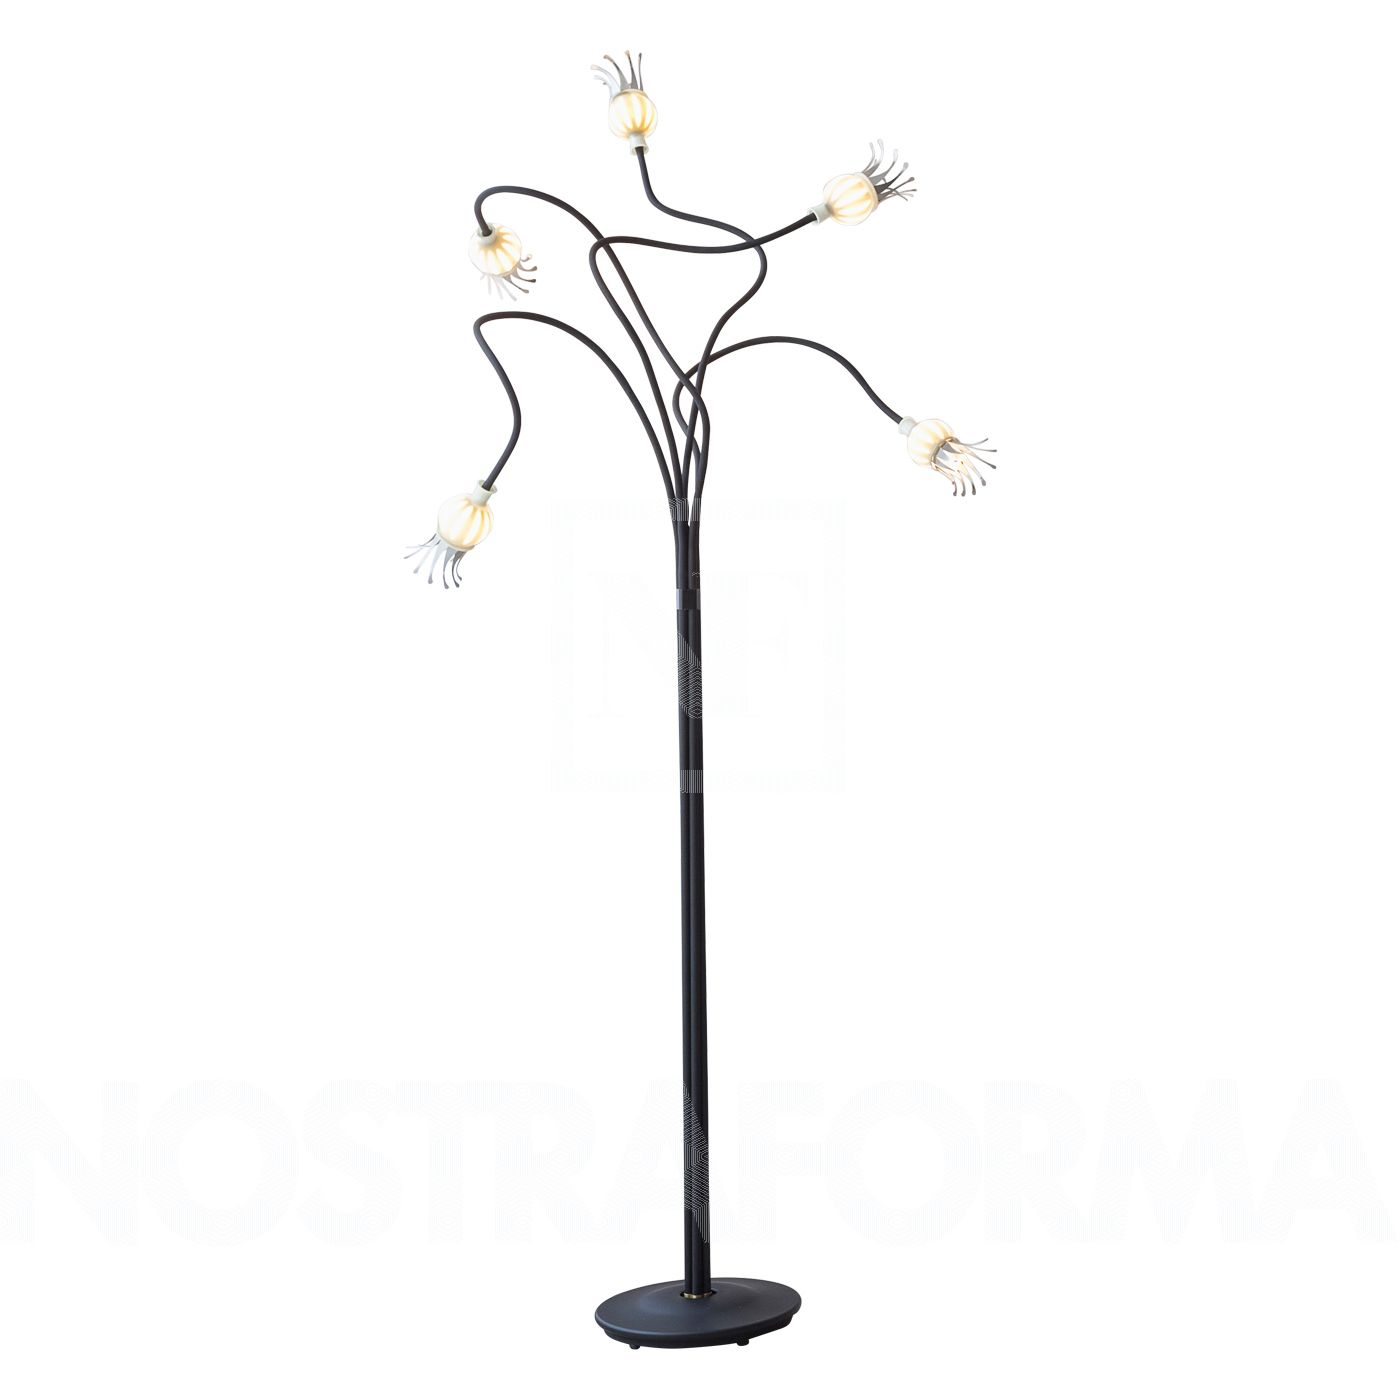 Serien Lighting Poppy 3 Floor Lamp intended for size 1400 X 1400